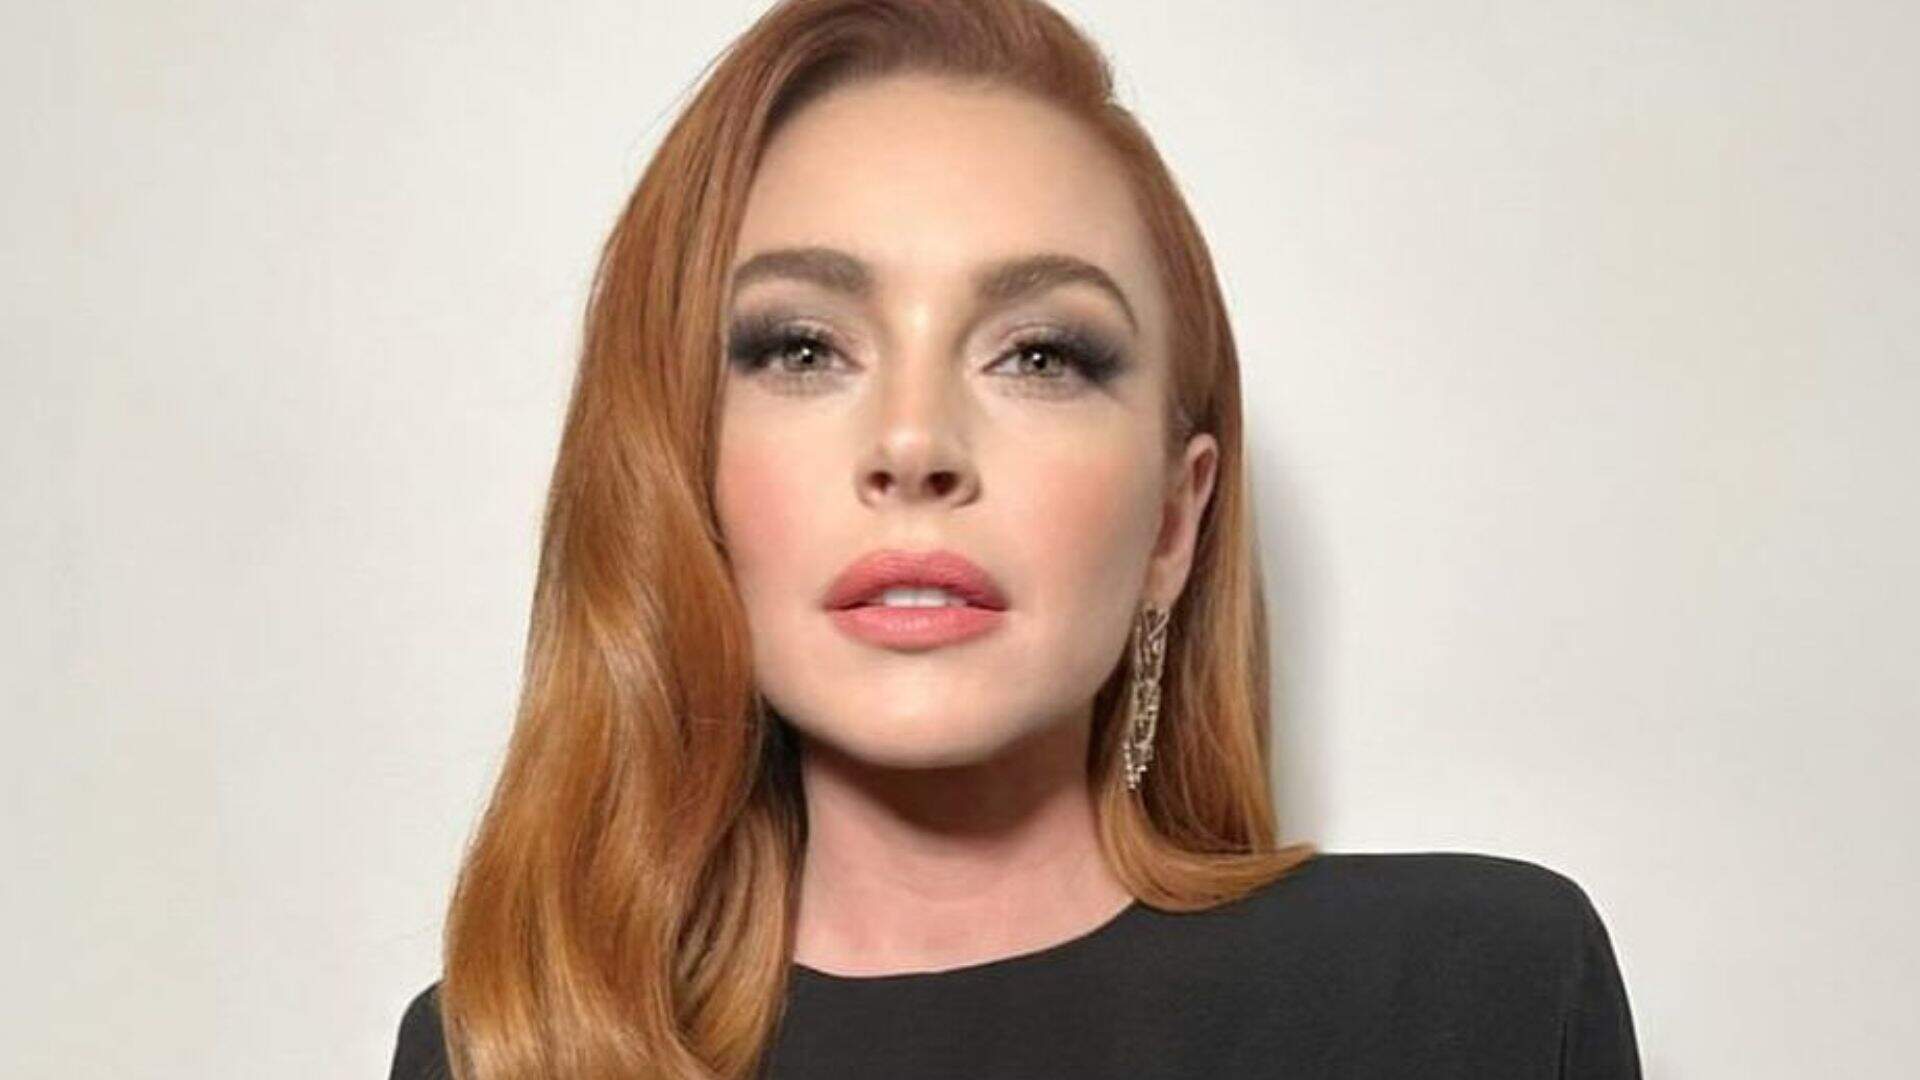 Lindsay Lohan, atriz, cantora e empresária americana, alcançou destaque como modelo infantil e estrela mirim em comerciais e TV. Seu grande avanço foi em 1998 com 